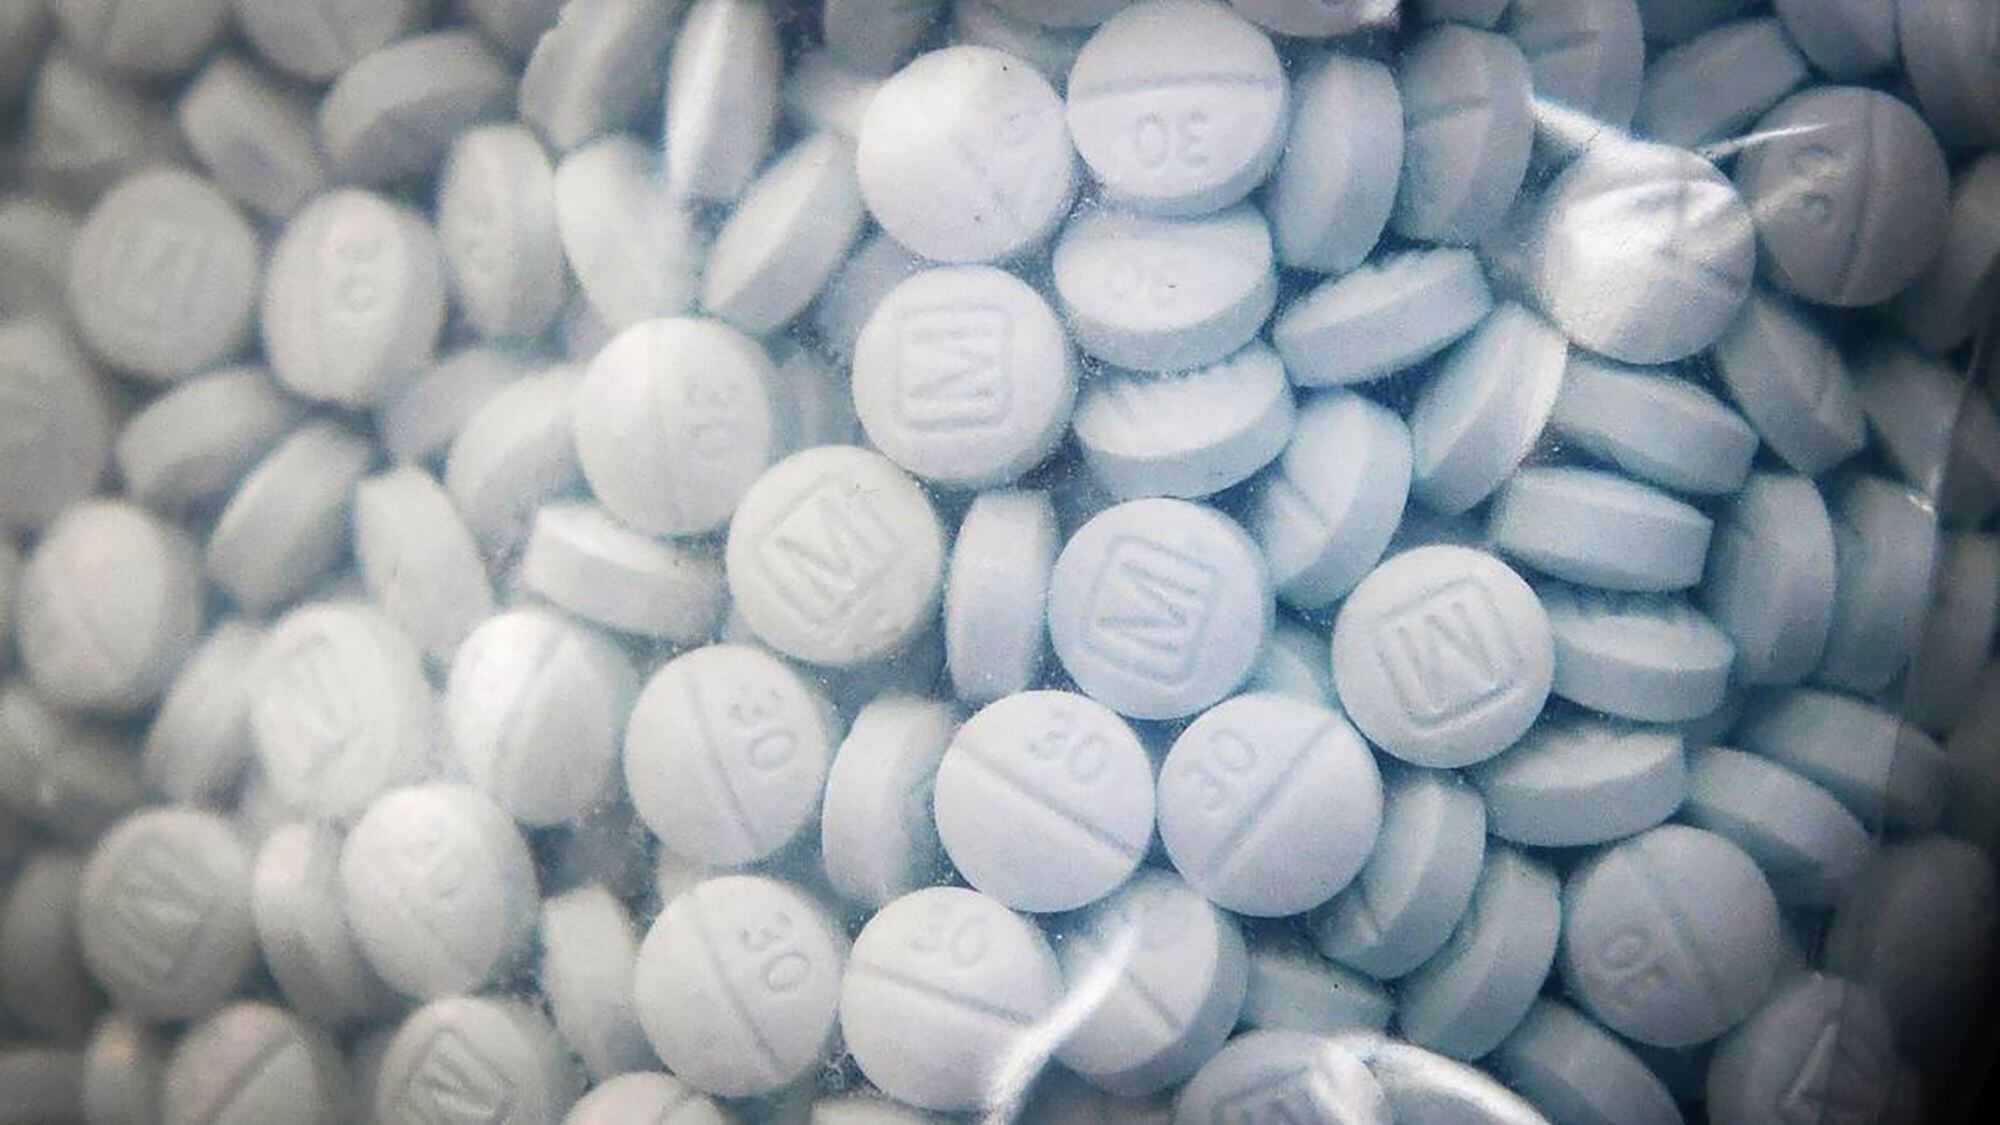 Una bolsa de pruebas que contiene el opioide sintético fentanilo disfrazado de Oxicodona se muestra durante una rueda de prensa en 2020 (Europa Press/Craig Kohlruss)
